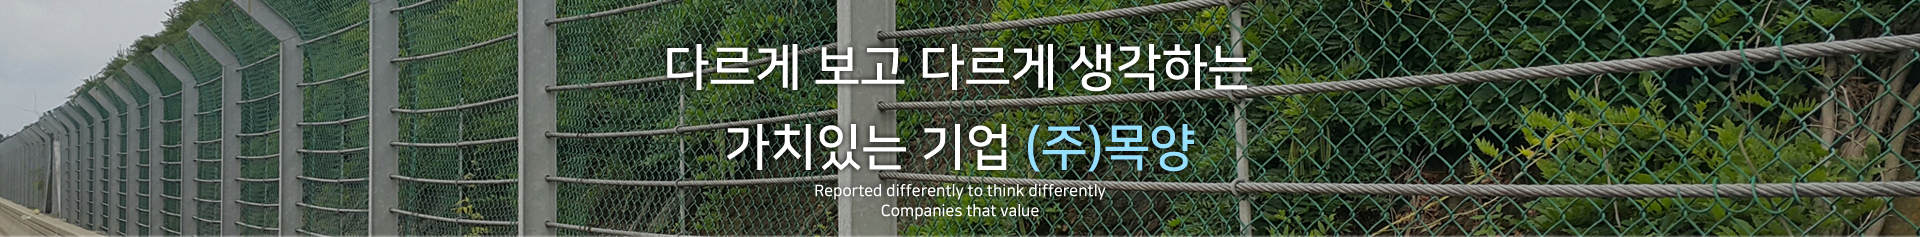 다르게 보고 다르게 생각하는 가치있는 기업 (주)목양 Reported differently to think differently
Companies that value